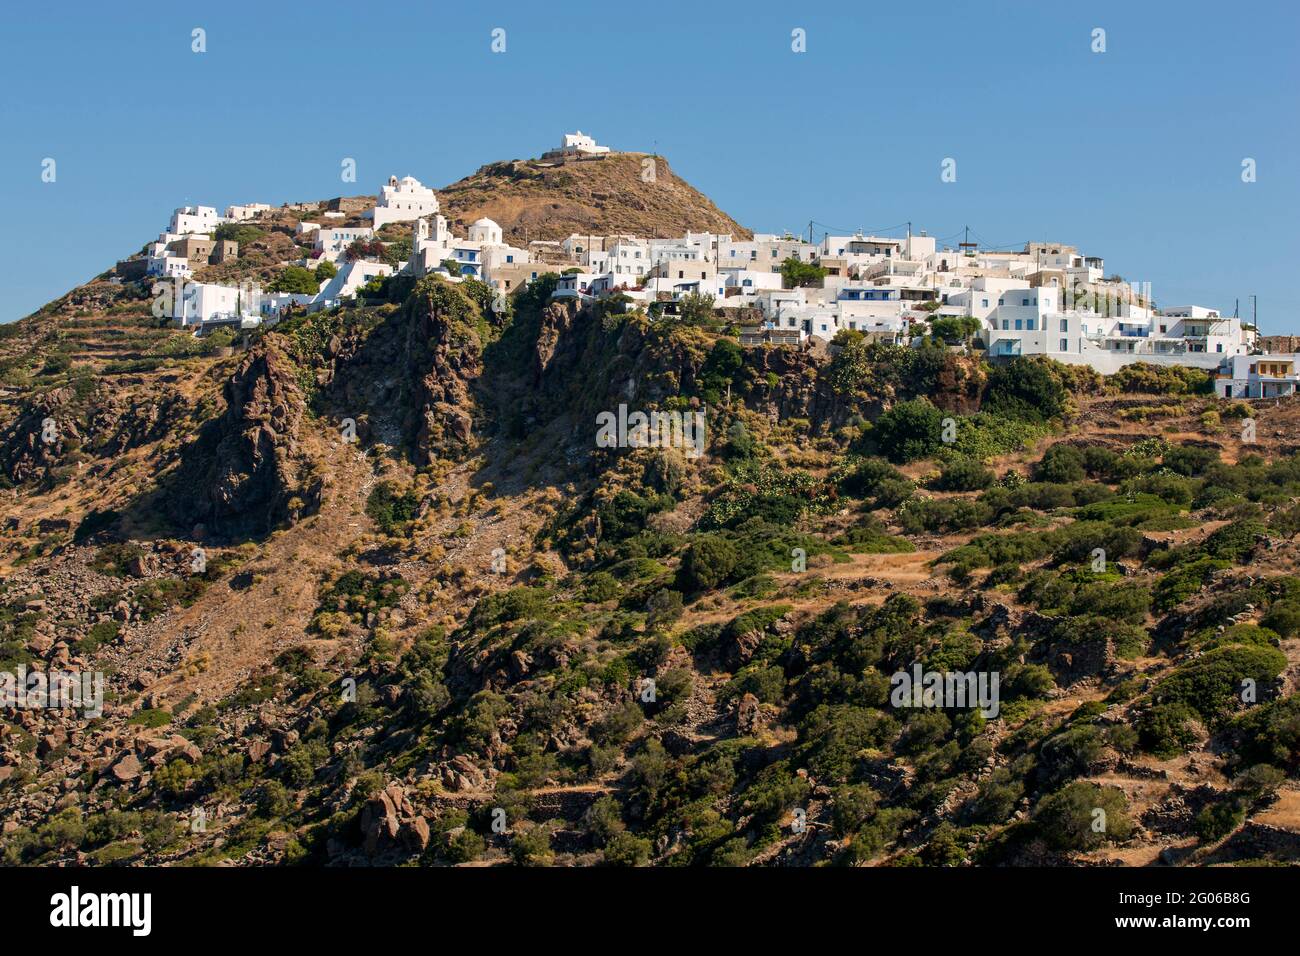 Vue panoramique sur le village de plaka, Milos, Cyclades, Grèce, Europe Banque D'Images